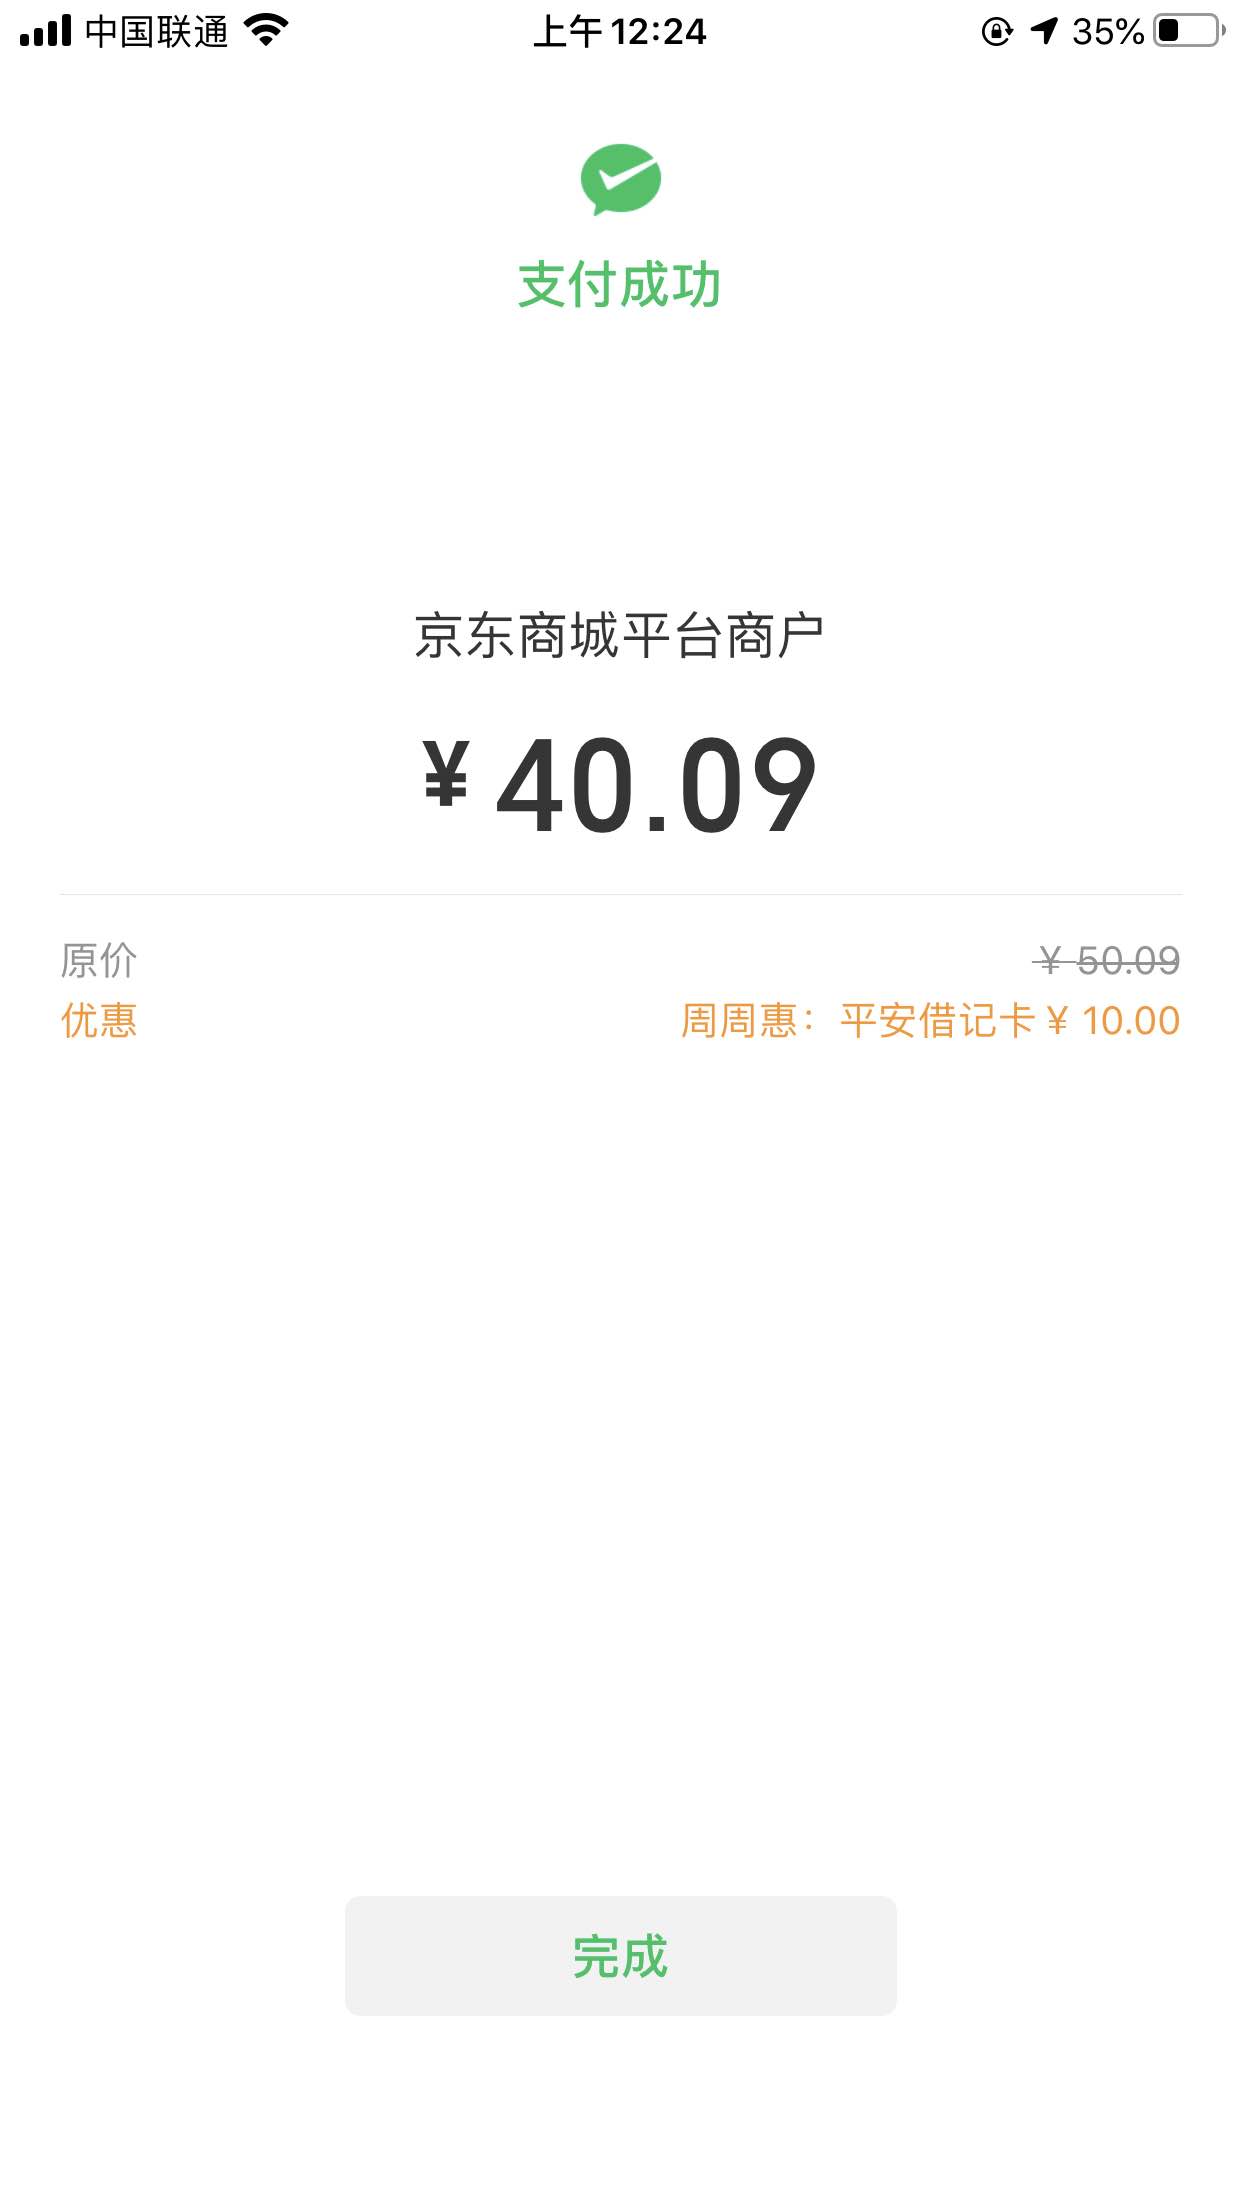 京东平安出了-微信-平安储蓄卡50-10-惠小助(52huixz.com)